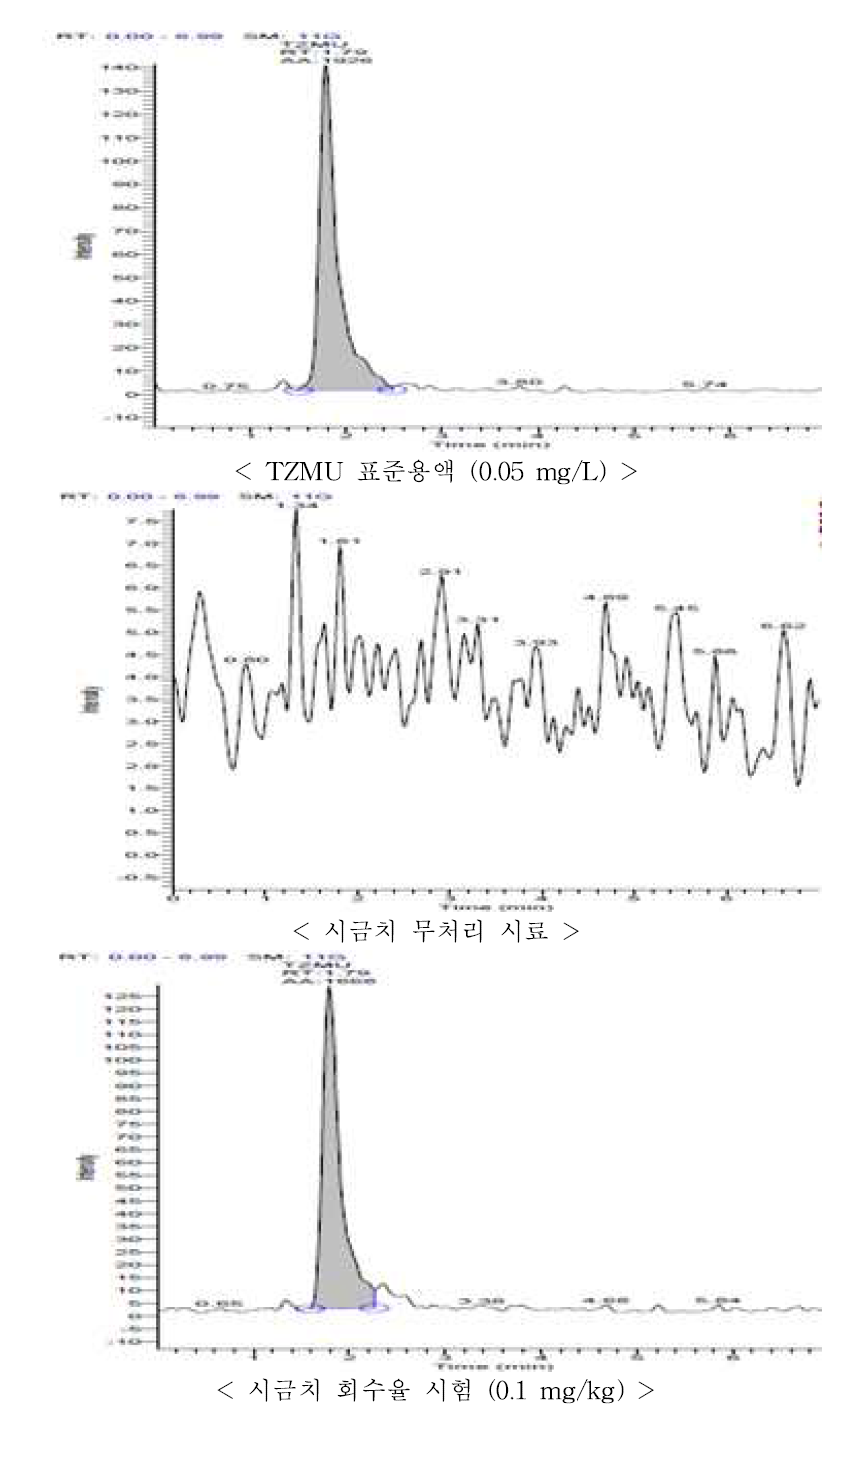 시금치 중 TZMU의 회수율 크로마토그램